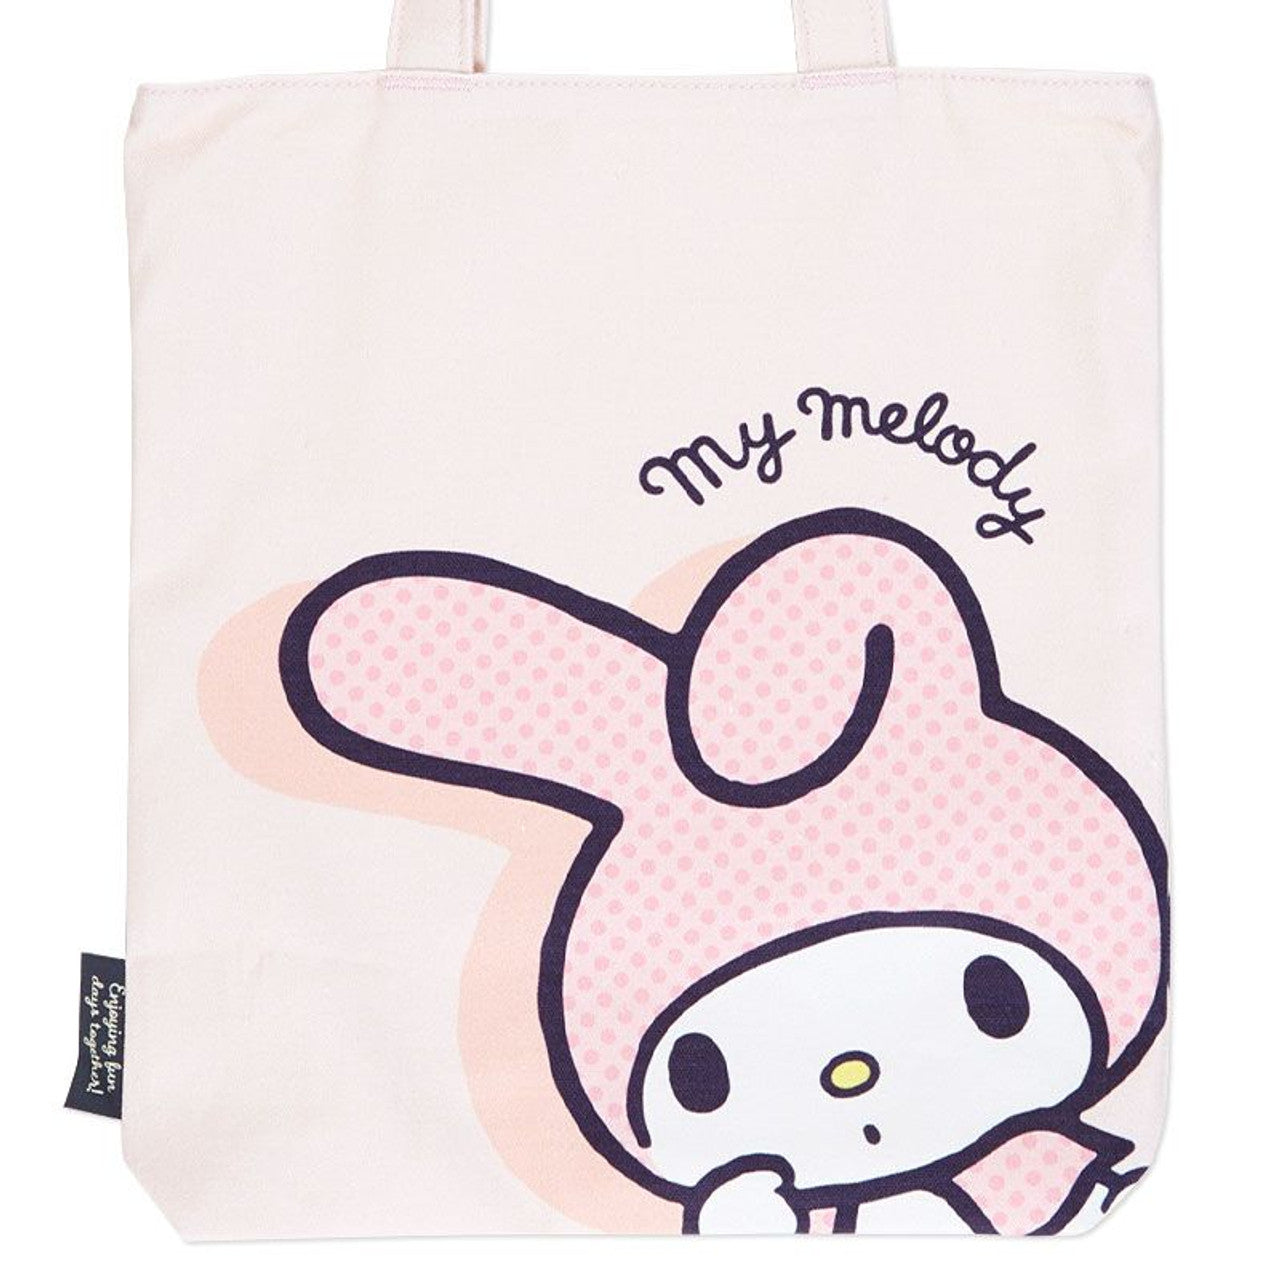 Sanrio My Melody Simple Canvas Tote Bag